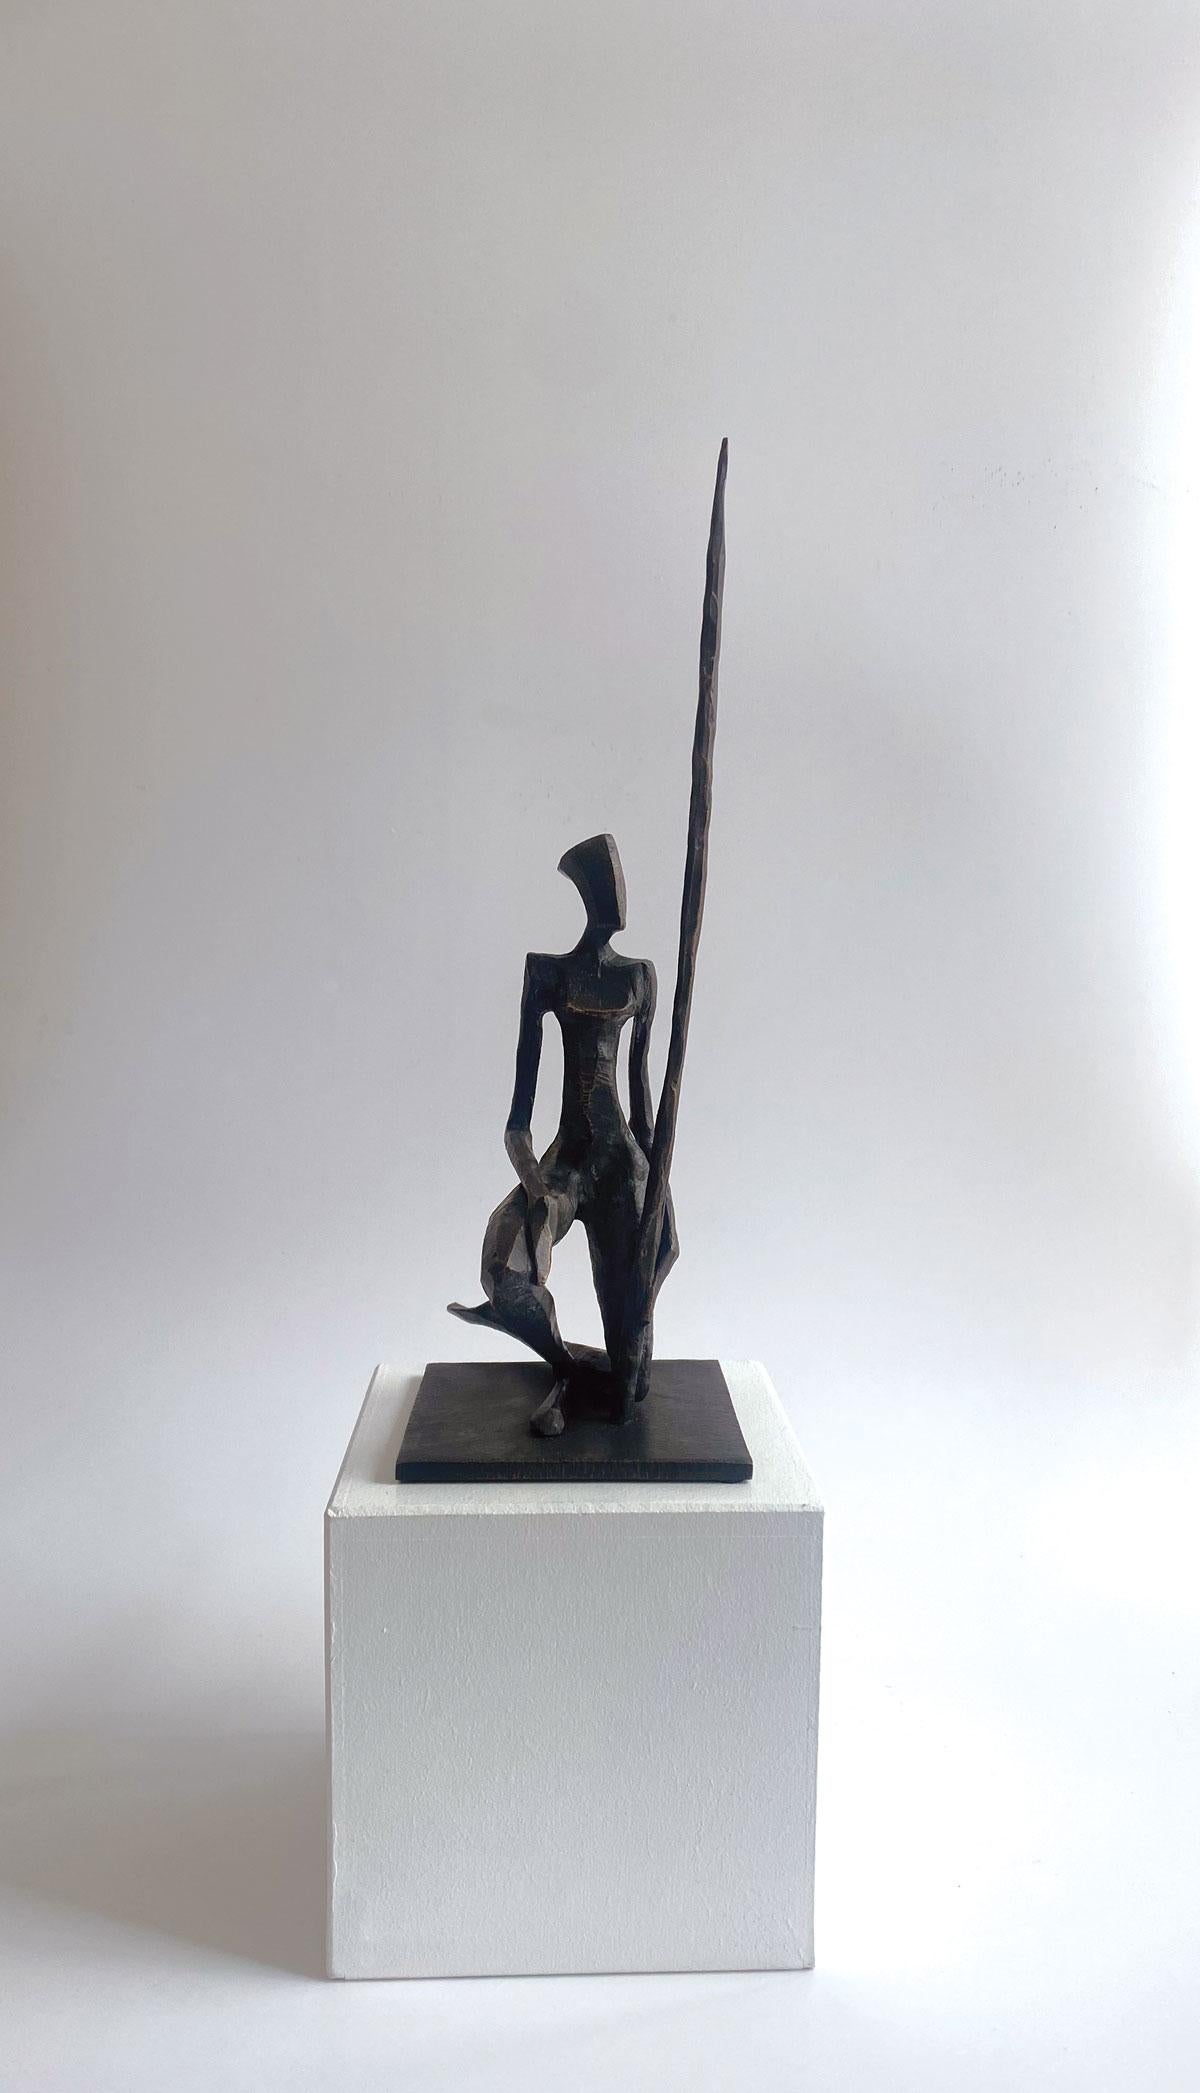 Valentina ist eine elegante figurative Bronzeskulptur von Nando Kallweit.

Der stilisierte ägyptisch angehauchte Kopf ist der modernen jugendlichen Haltung nachempfunden, verweist aber auch auf die Bedeutung des Erbes. Ein schönes Stück für sich